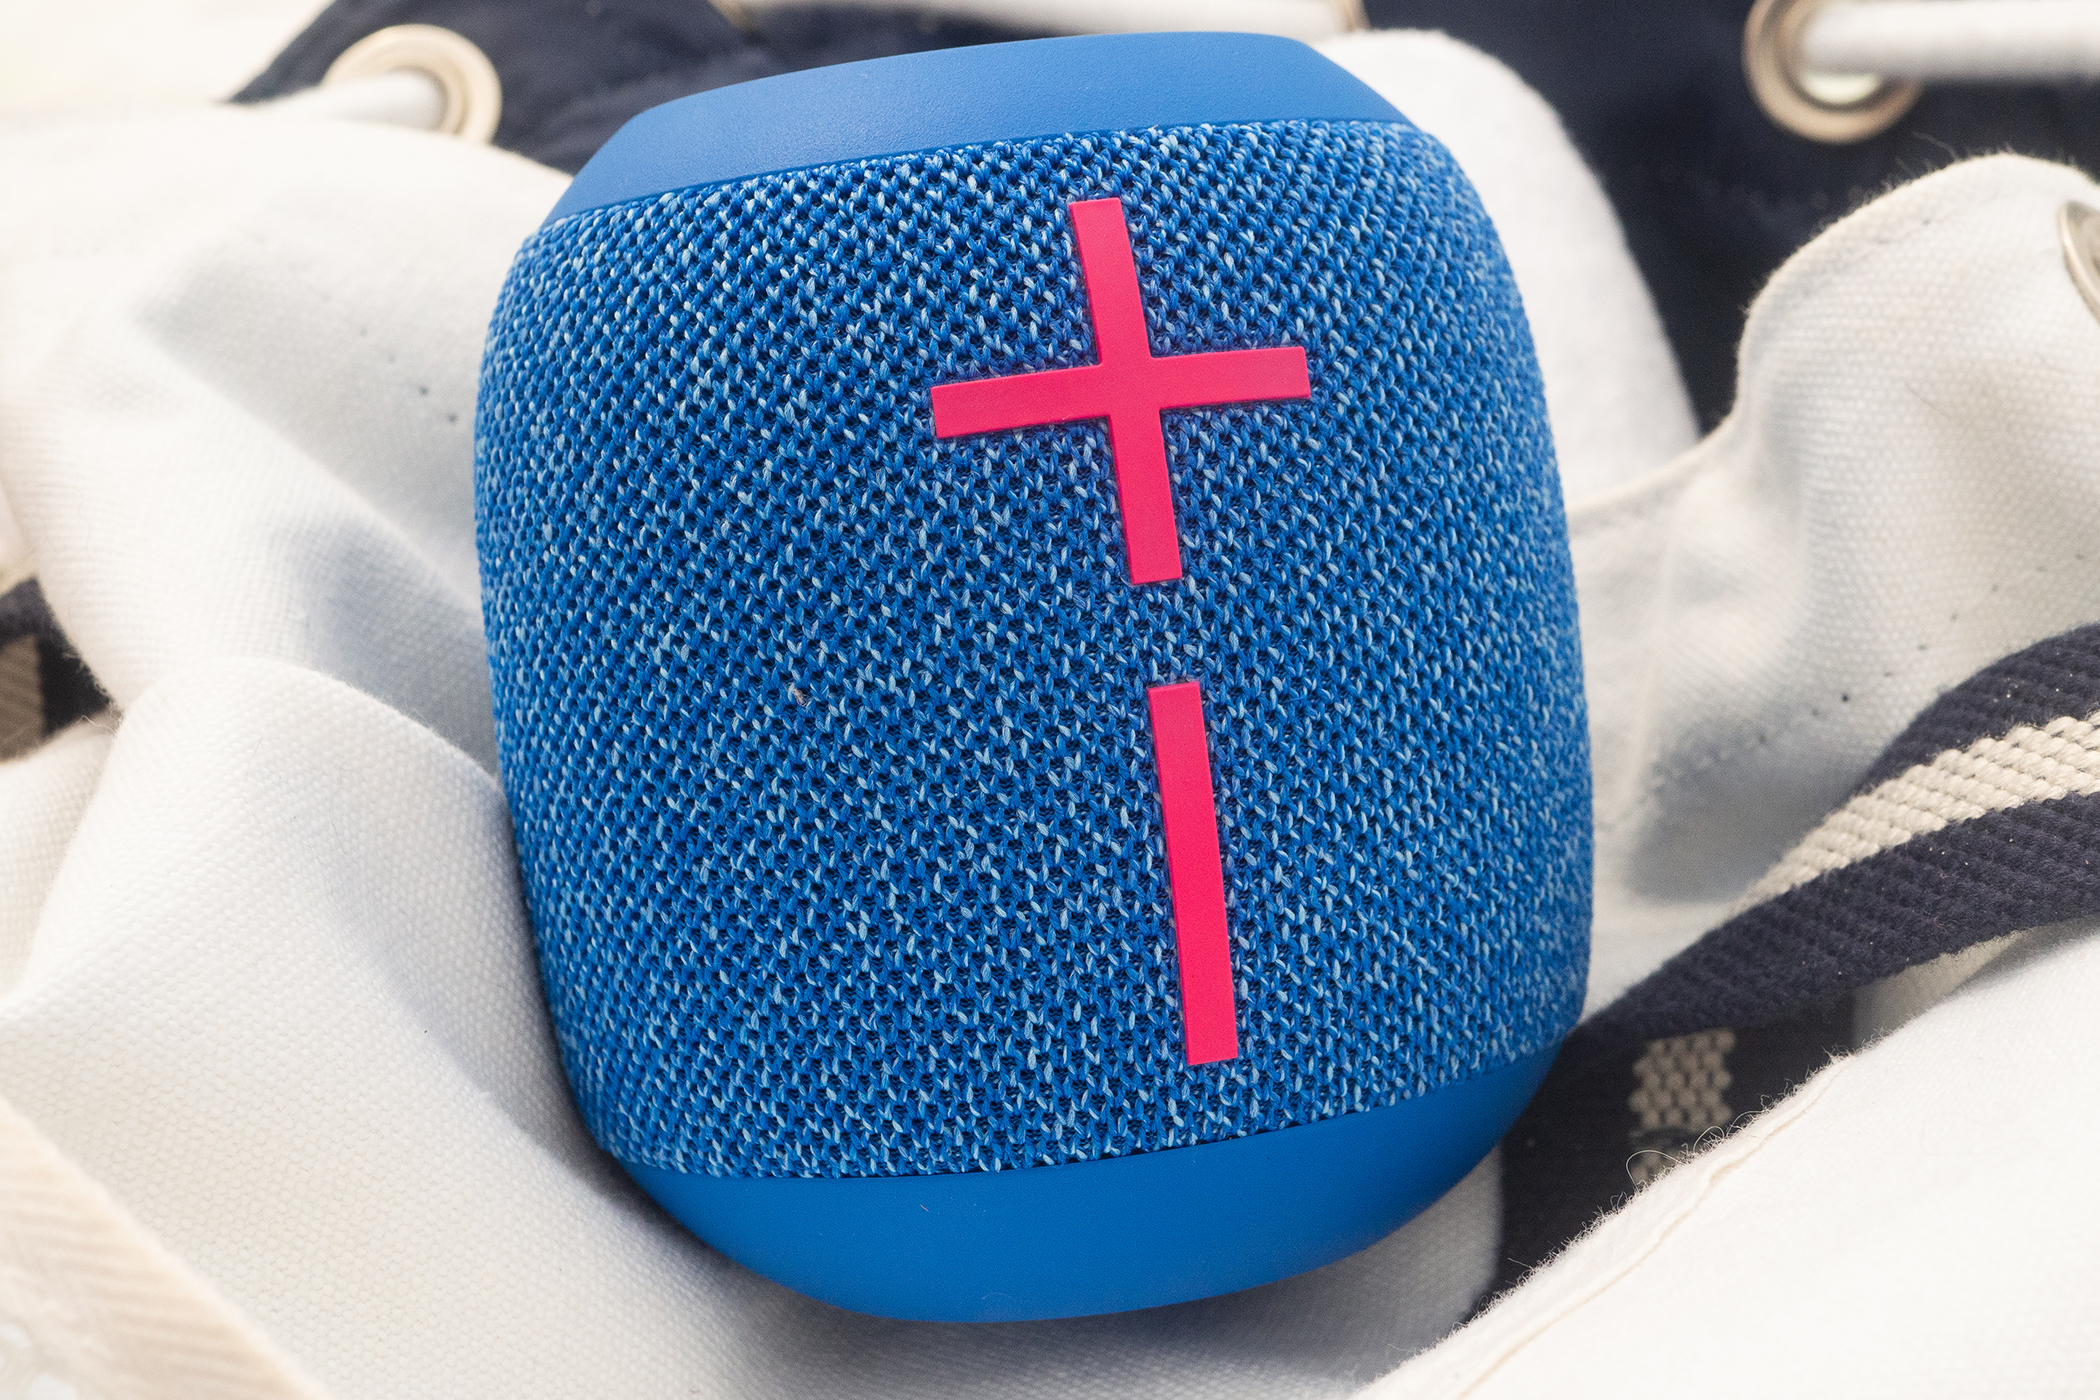 Ultimate Ears WONDERBOOM 3 Portable Bluetooth Speaker (Performance Blue)